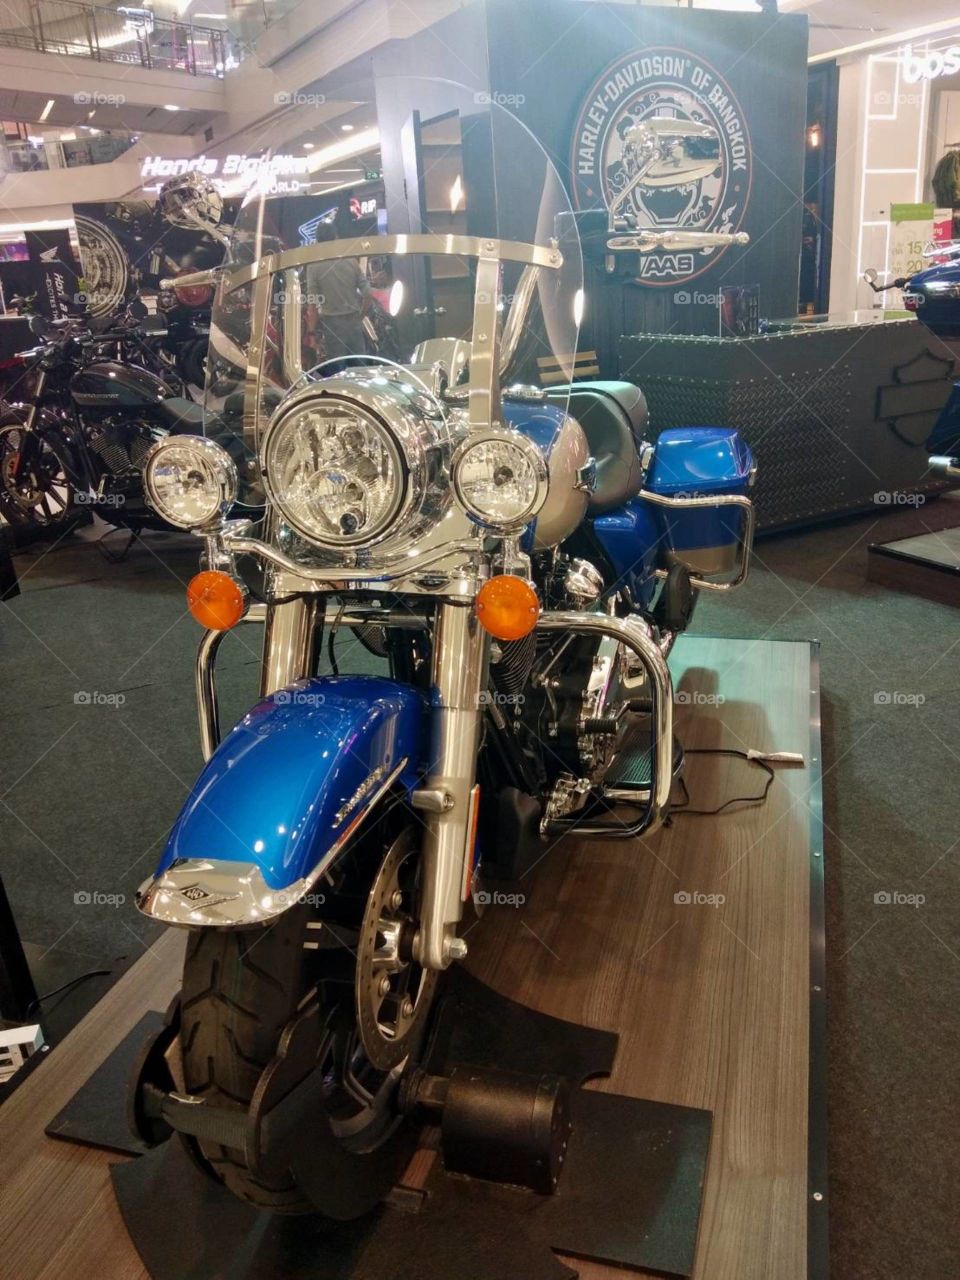 Harley Davidson in Motor expo.